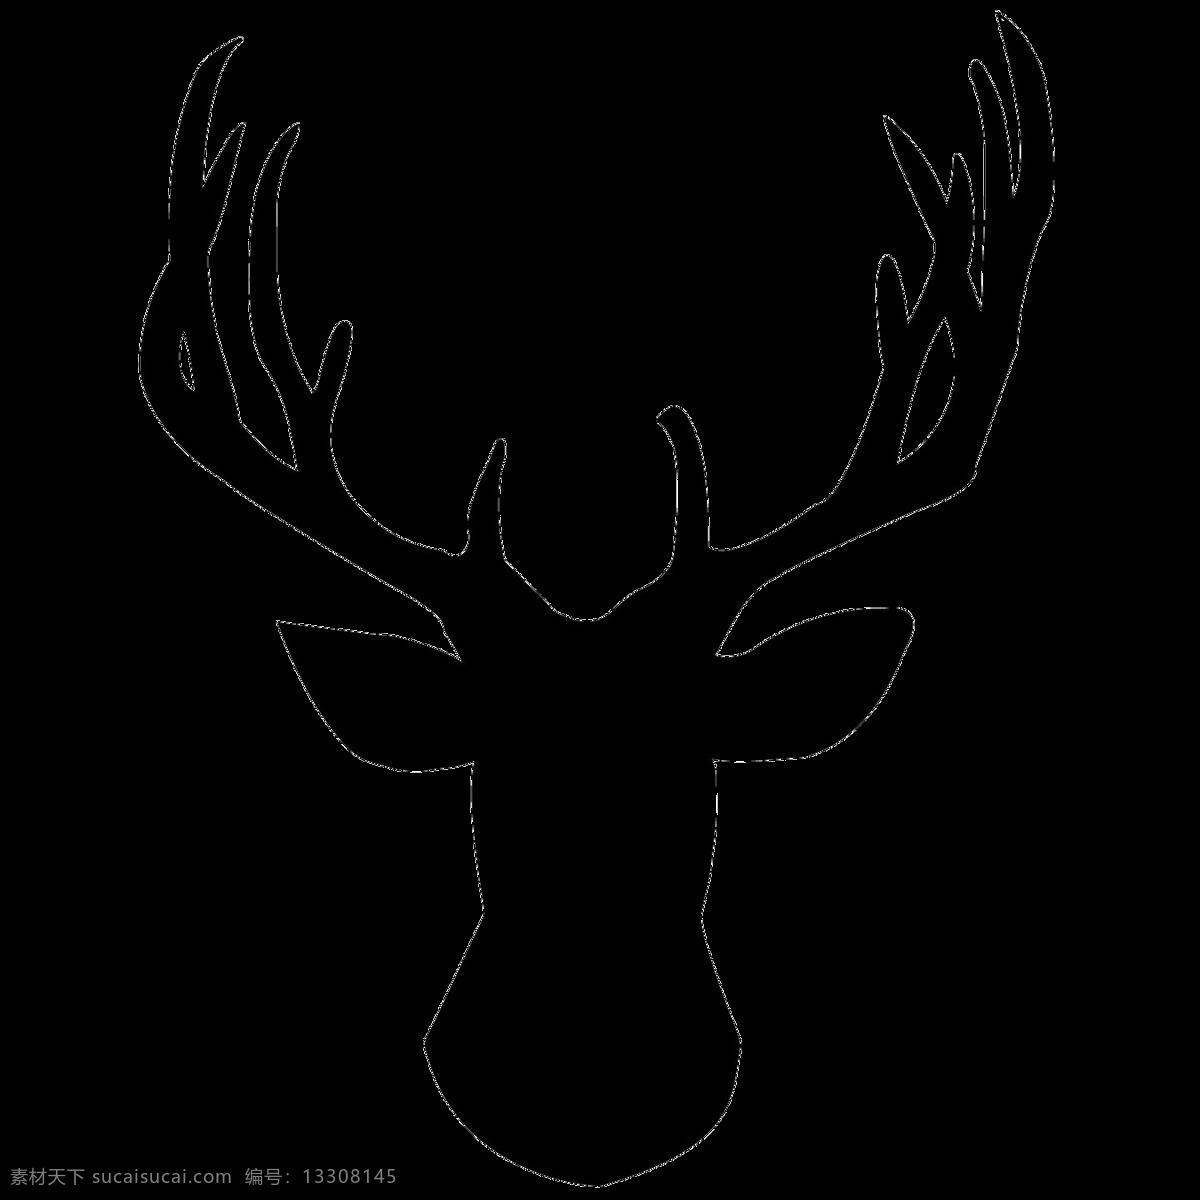 黑色 鹿头 剪影 免 抠 透明 黑色鹿头剪影 鹿剪影 鹿剪影图片 抽象的鹿剪影 鹿 广告 圣诞鹿剪影 驯鹿图片 圣诞驯鹿图片 鹿头剪影